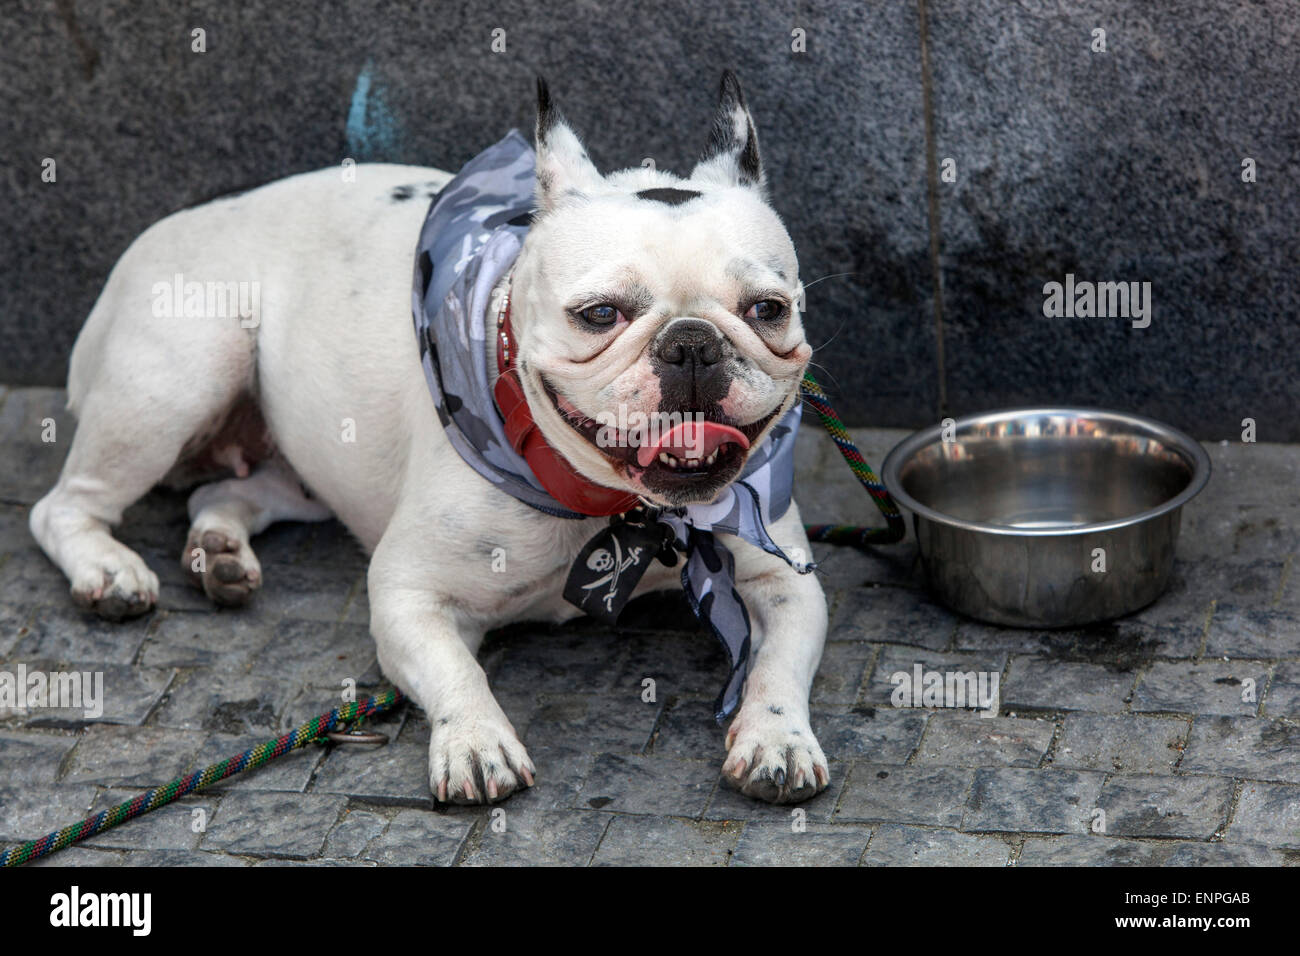 Verano Bulldog francés, para estar sediento cansado con el calor pirata scarve traje perro Foto de stock